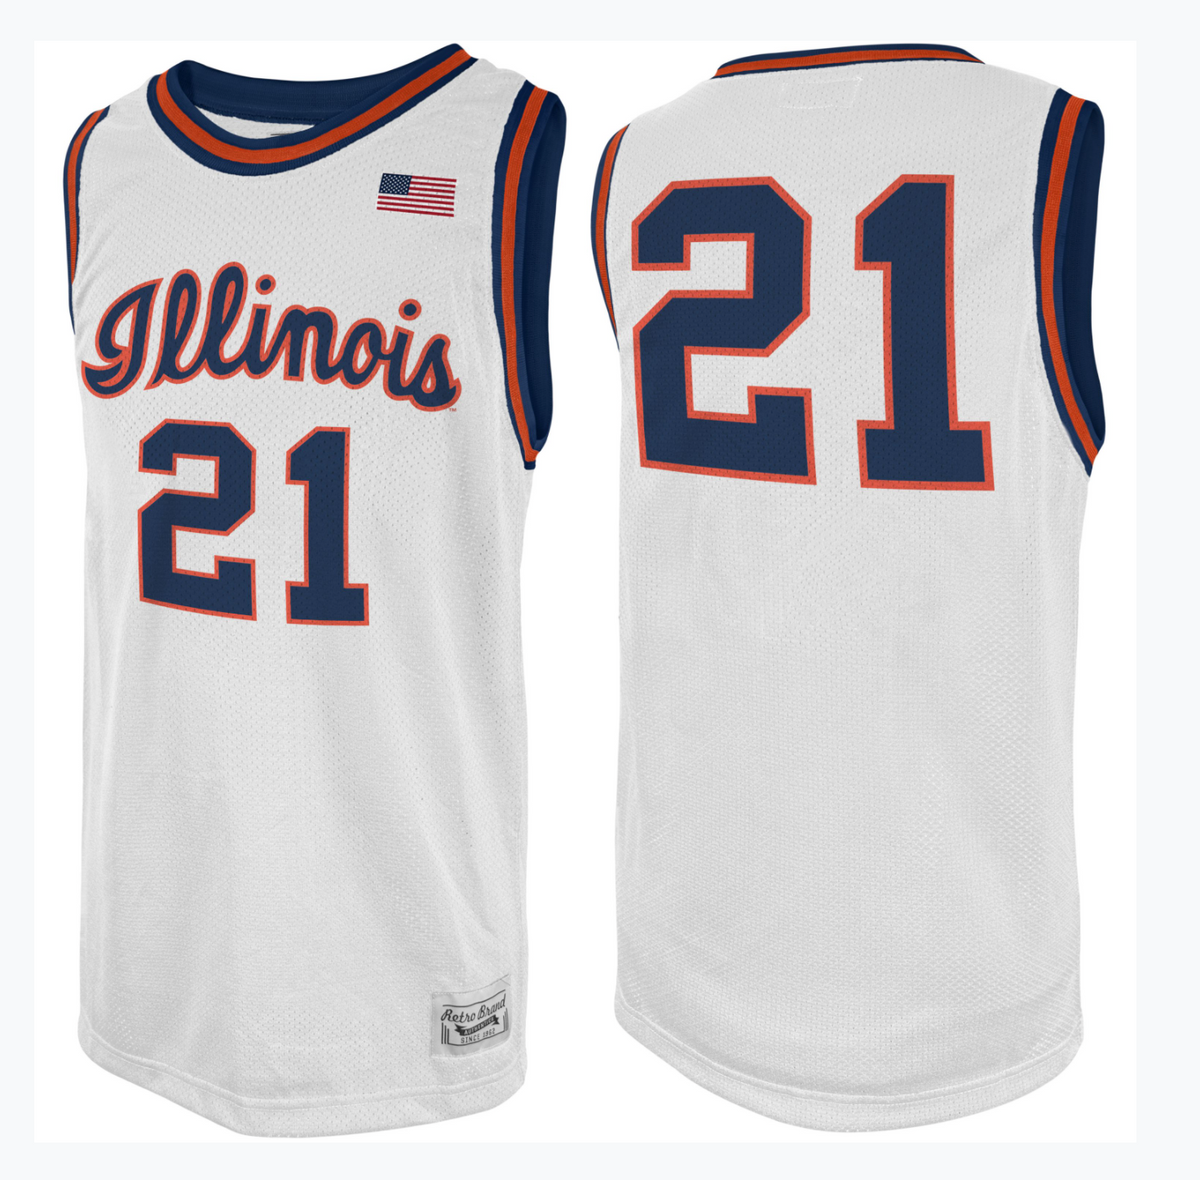 University of Illinois Fighting Illini Basketball Jersey #42 Team